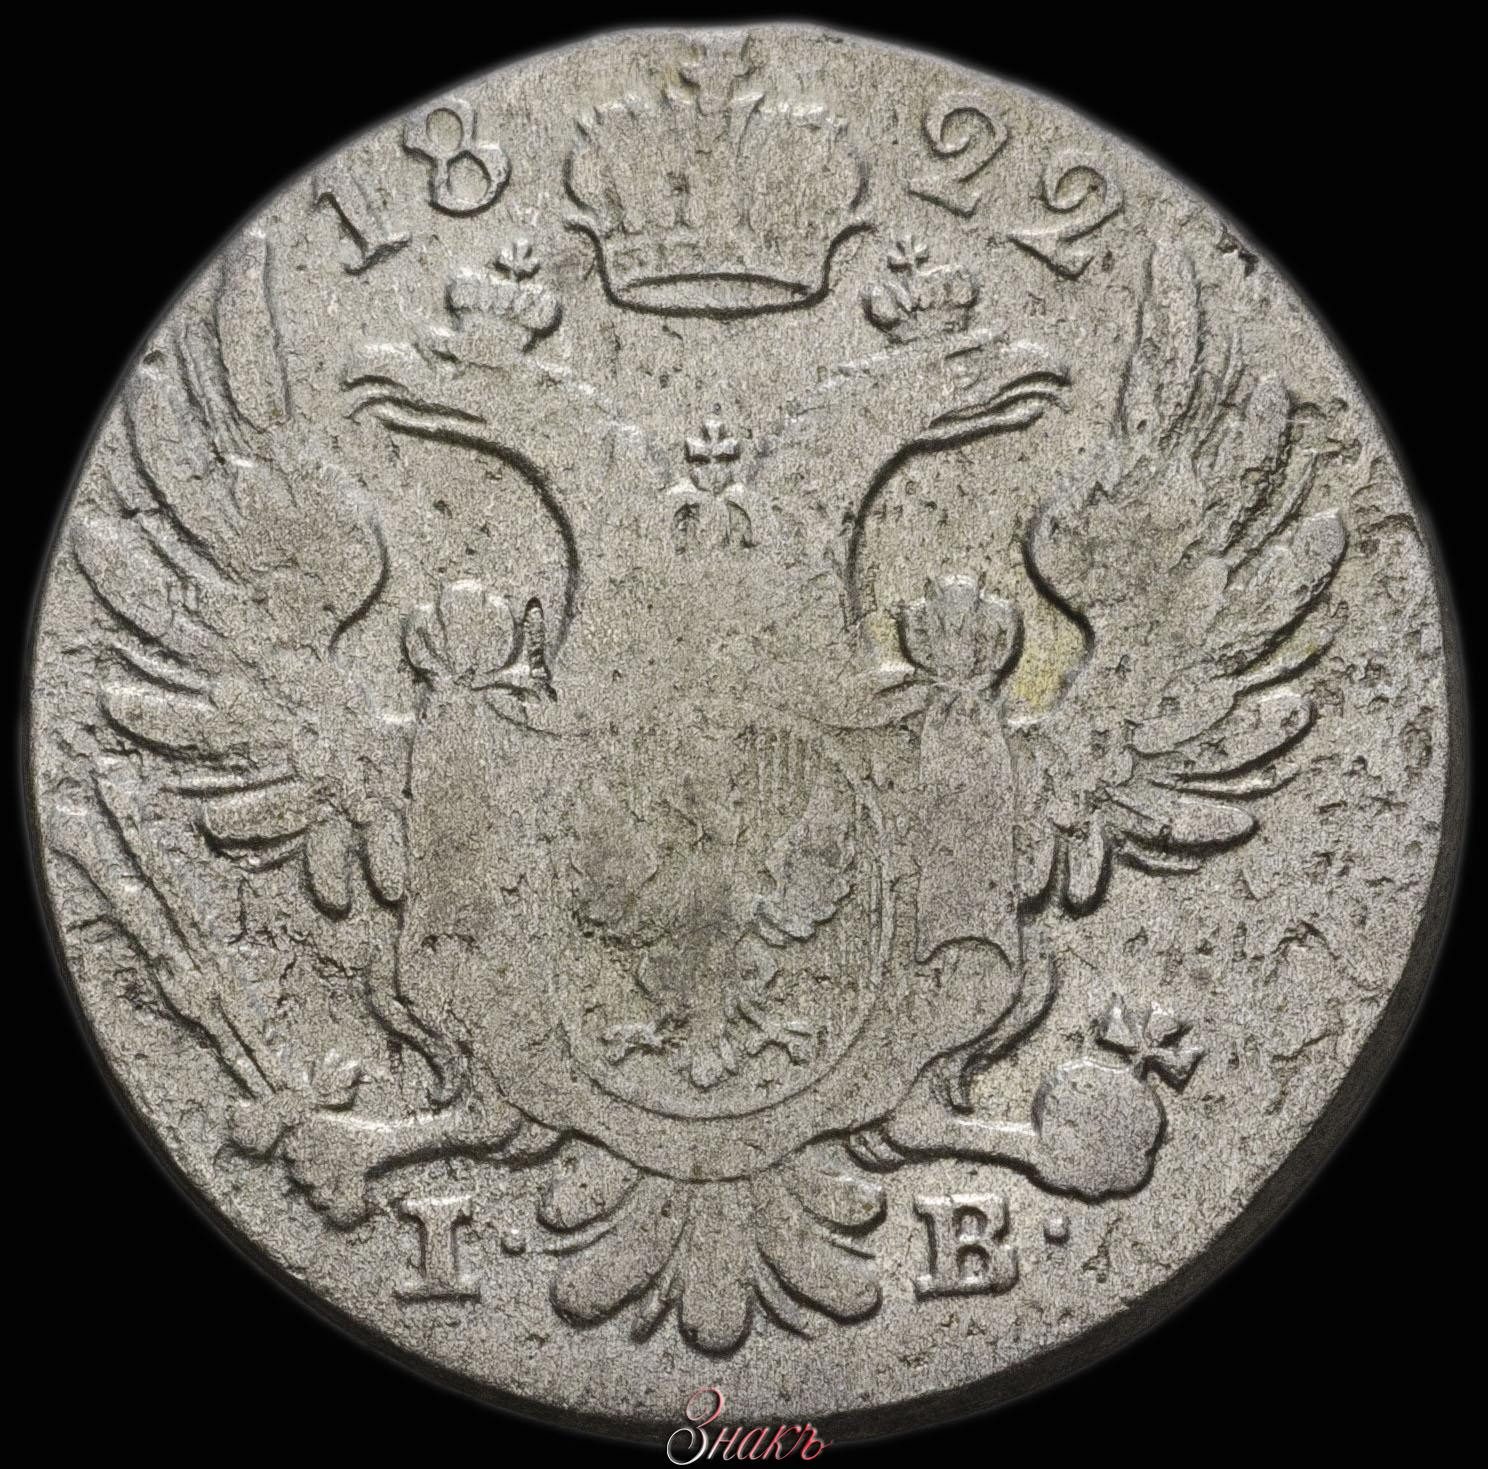 10 грошей 1822 года IВ Для Польши